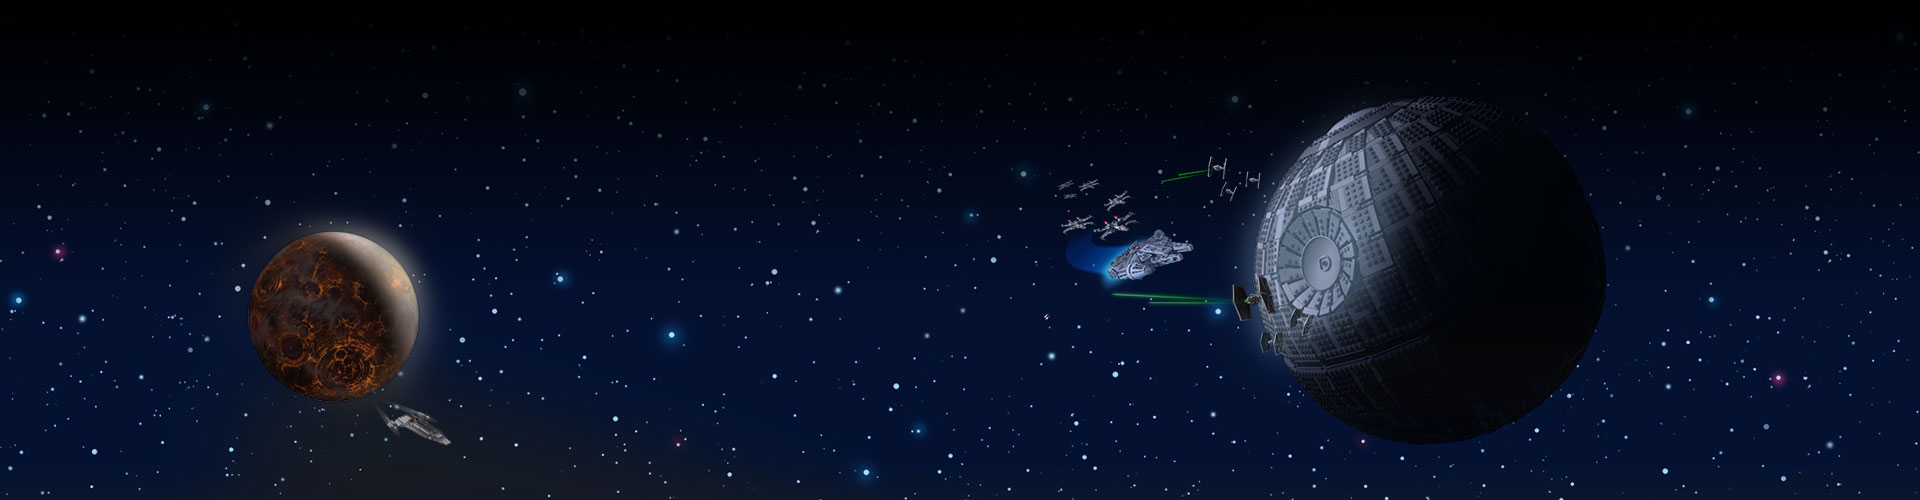 Zwei feindliche Stützpunkte im Weltraum mit Sternen im Hintergrund.